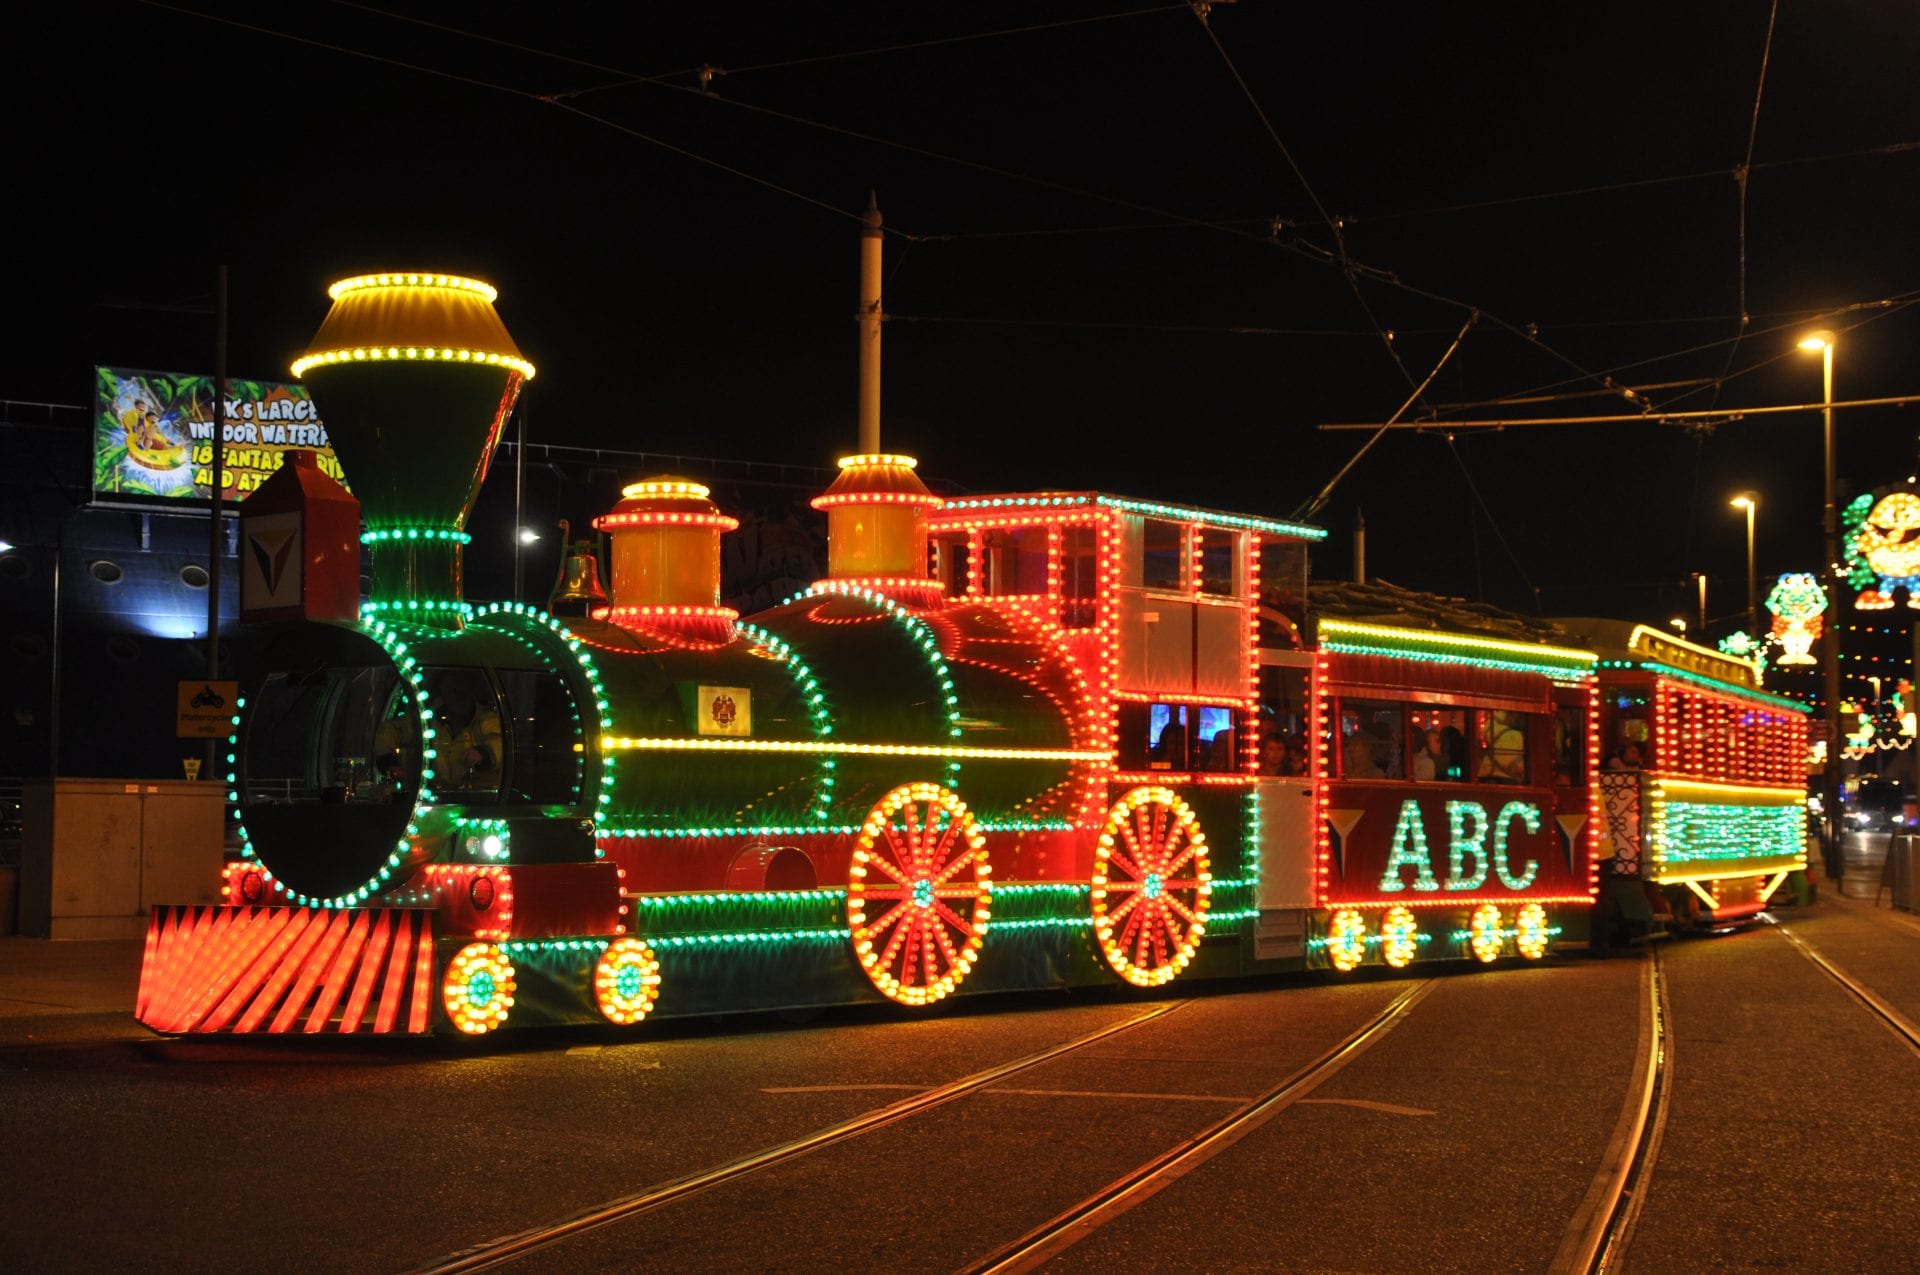 Blackpool Illuminated Heritage Tram, Western Train